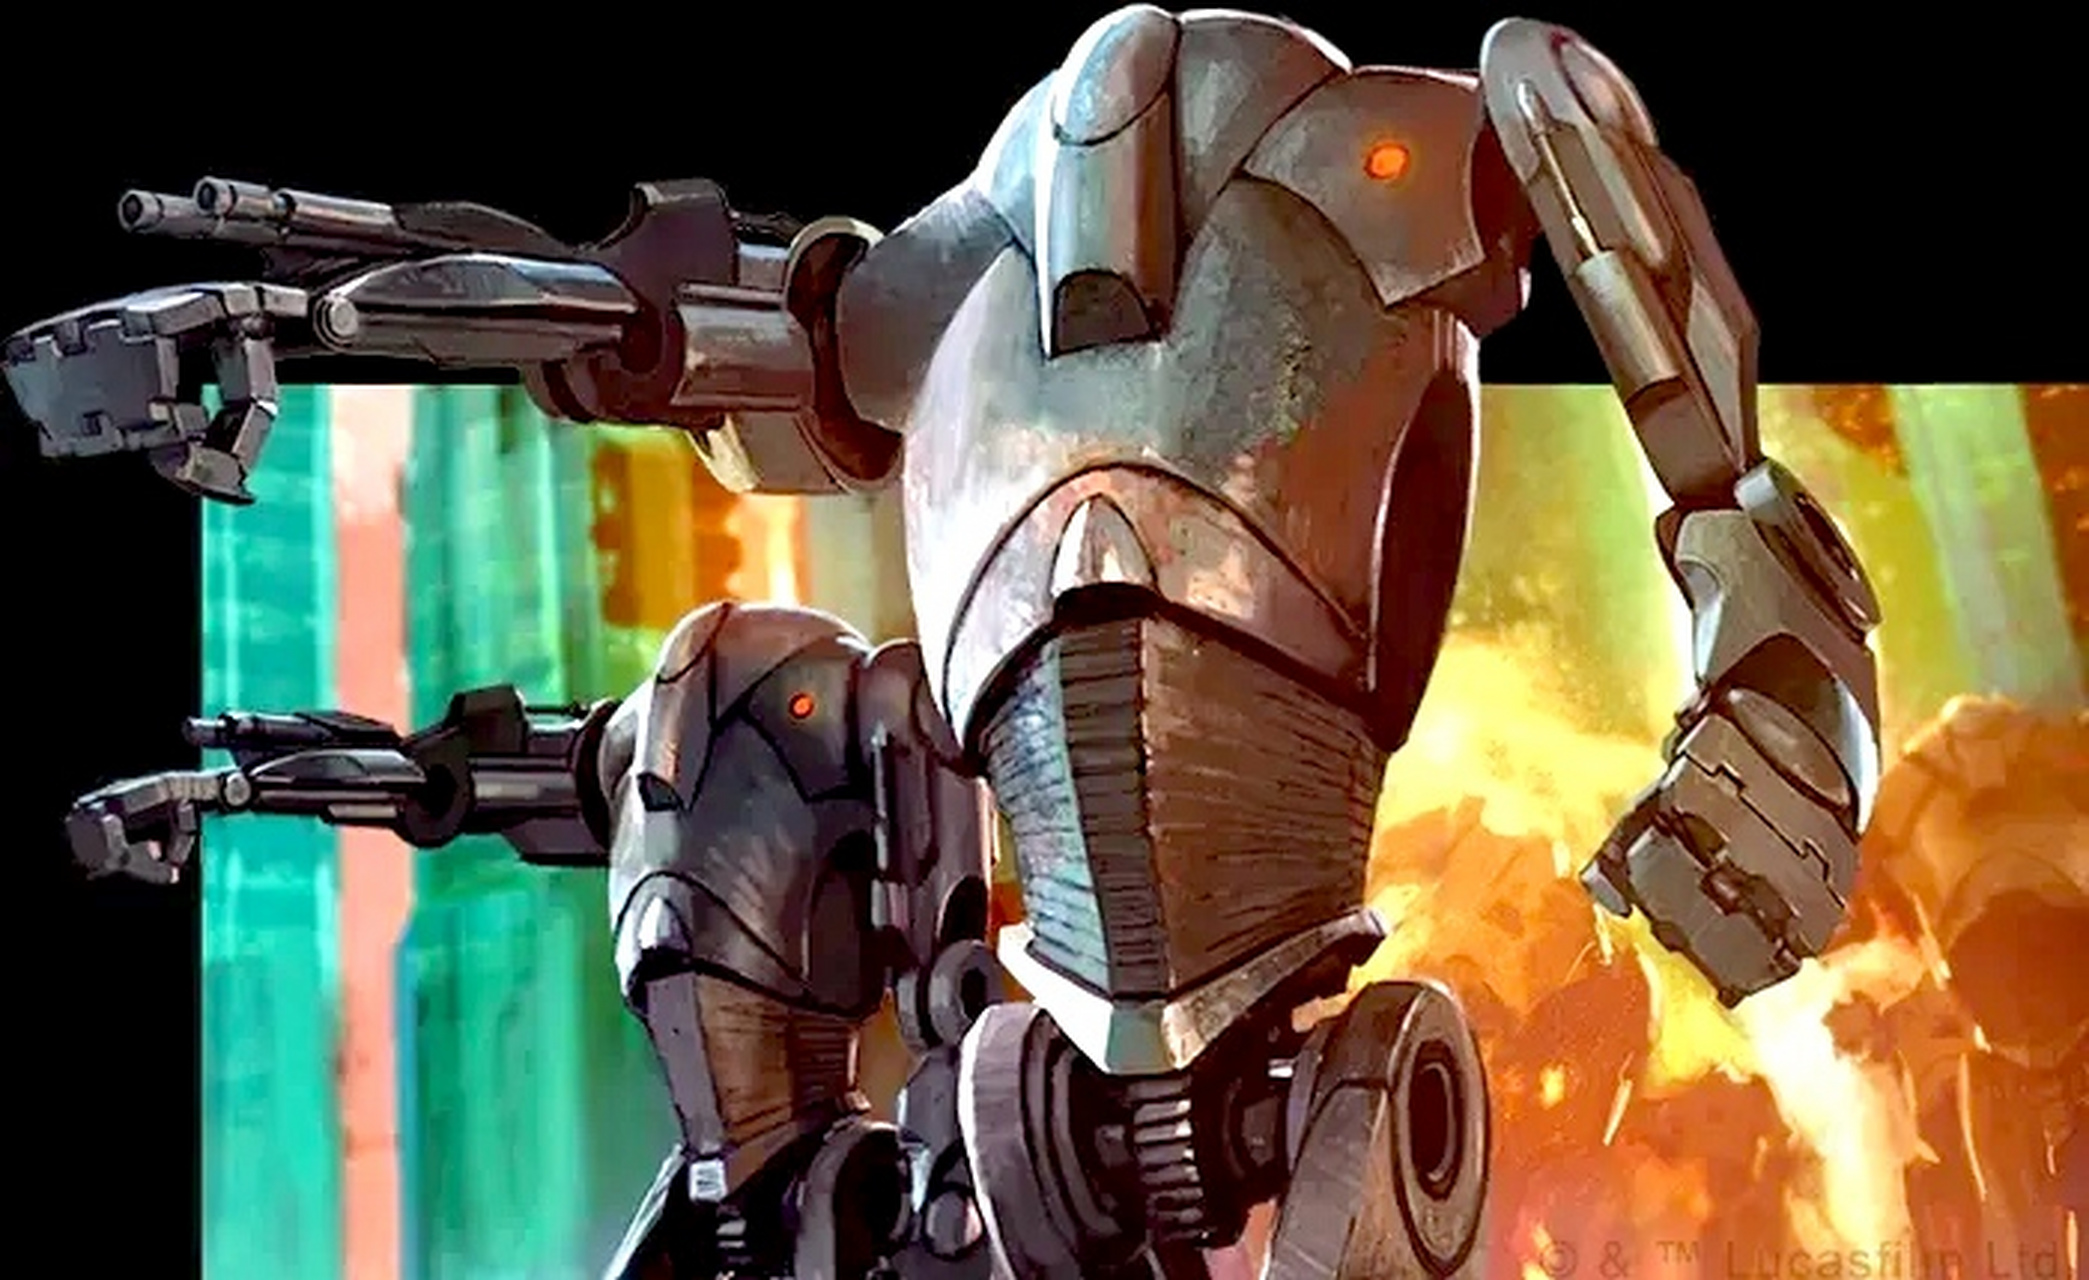 《星球大战 克隆人战争》贸易联盟 b2超级战斗机器人设计欣赏,是独立